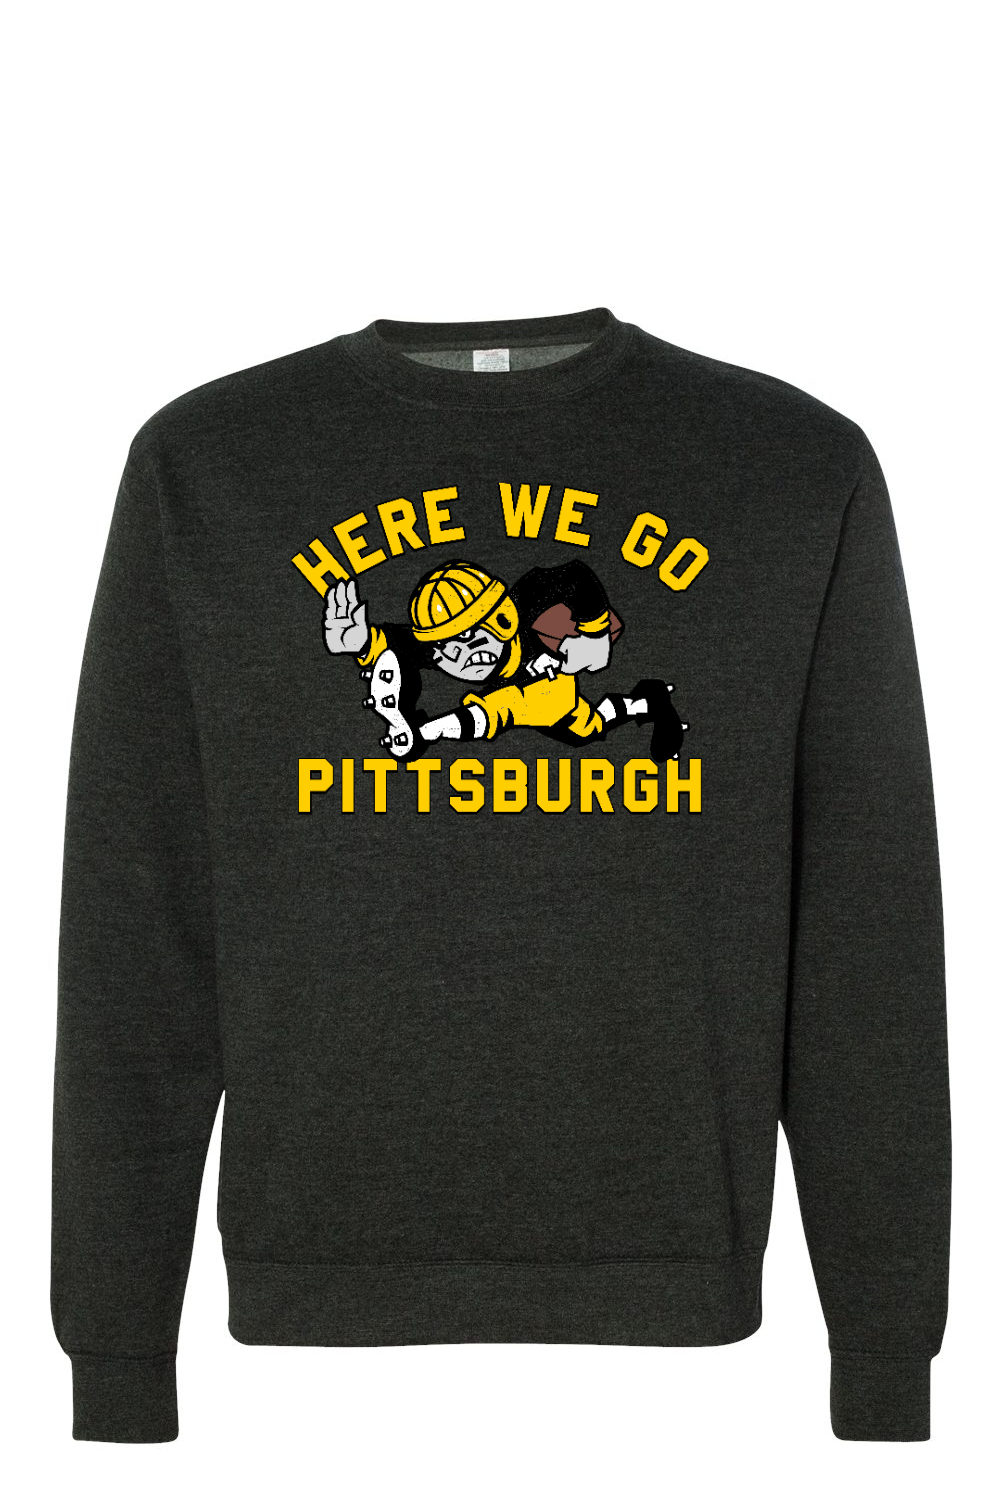 Here We Go Pittsburgh - Old School - Premium Crewneck Sweatshirt - Yinzylvania